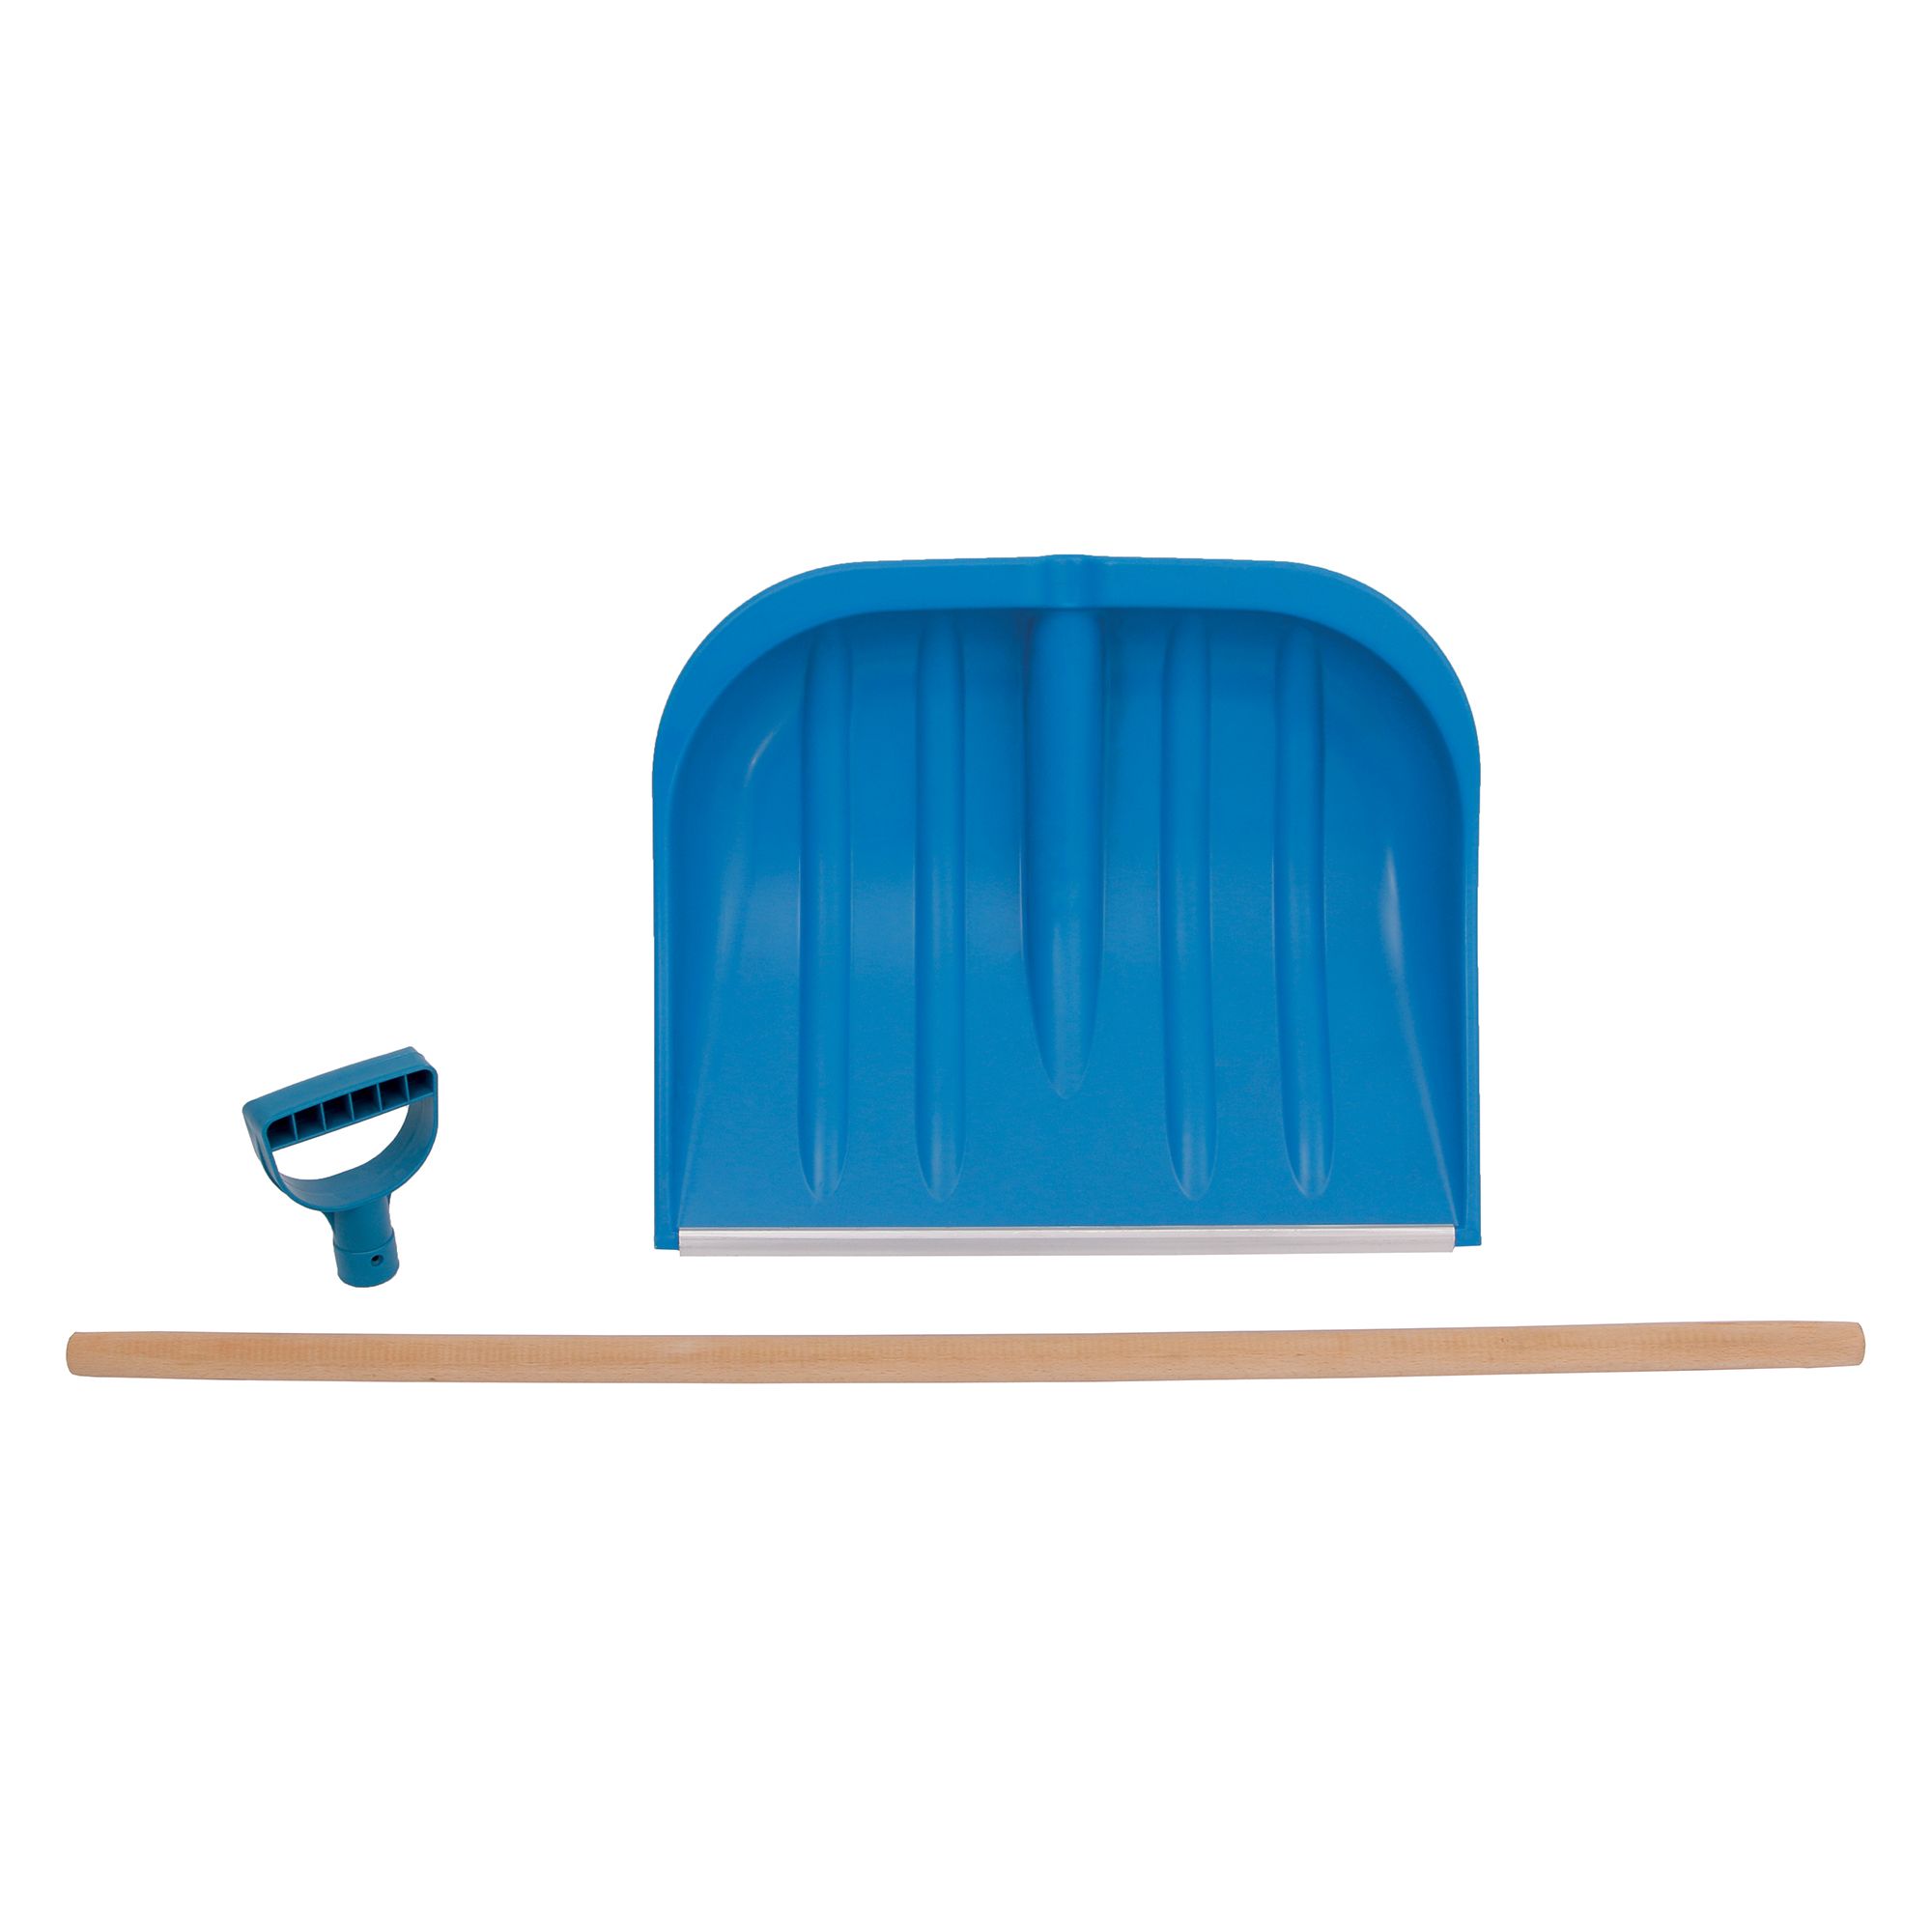 LEVIOR 60001 Odhrnovák na sníh modrý, dřevěná násada, 48 x 40cm, rozložený